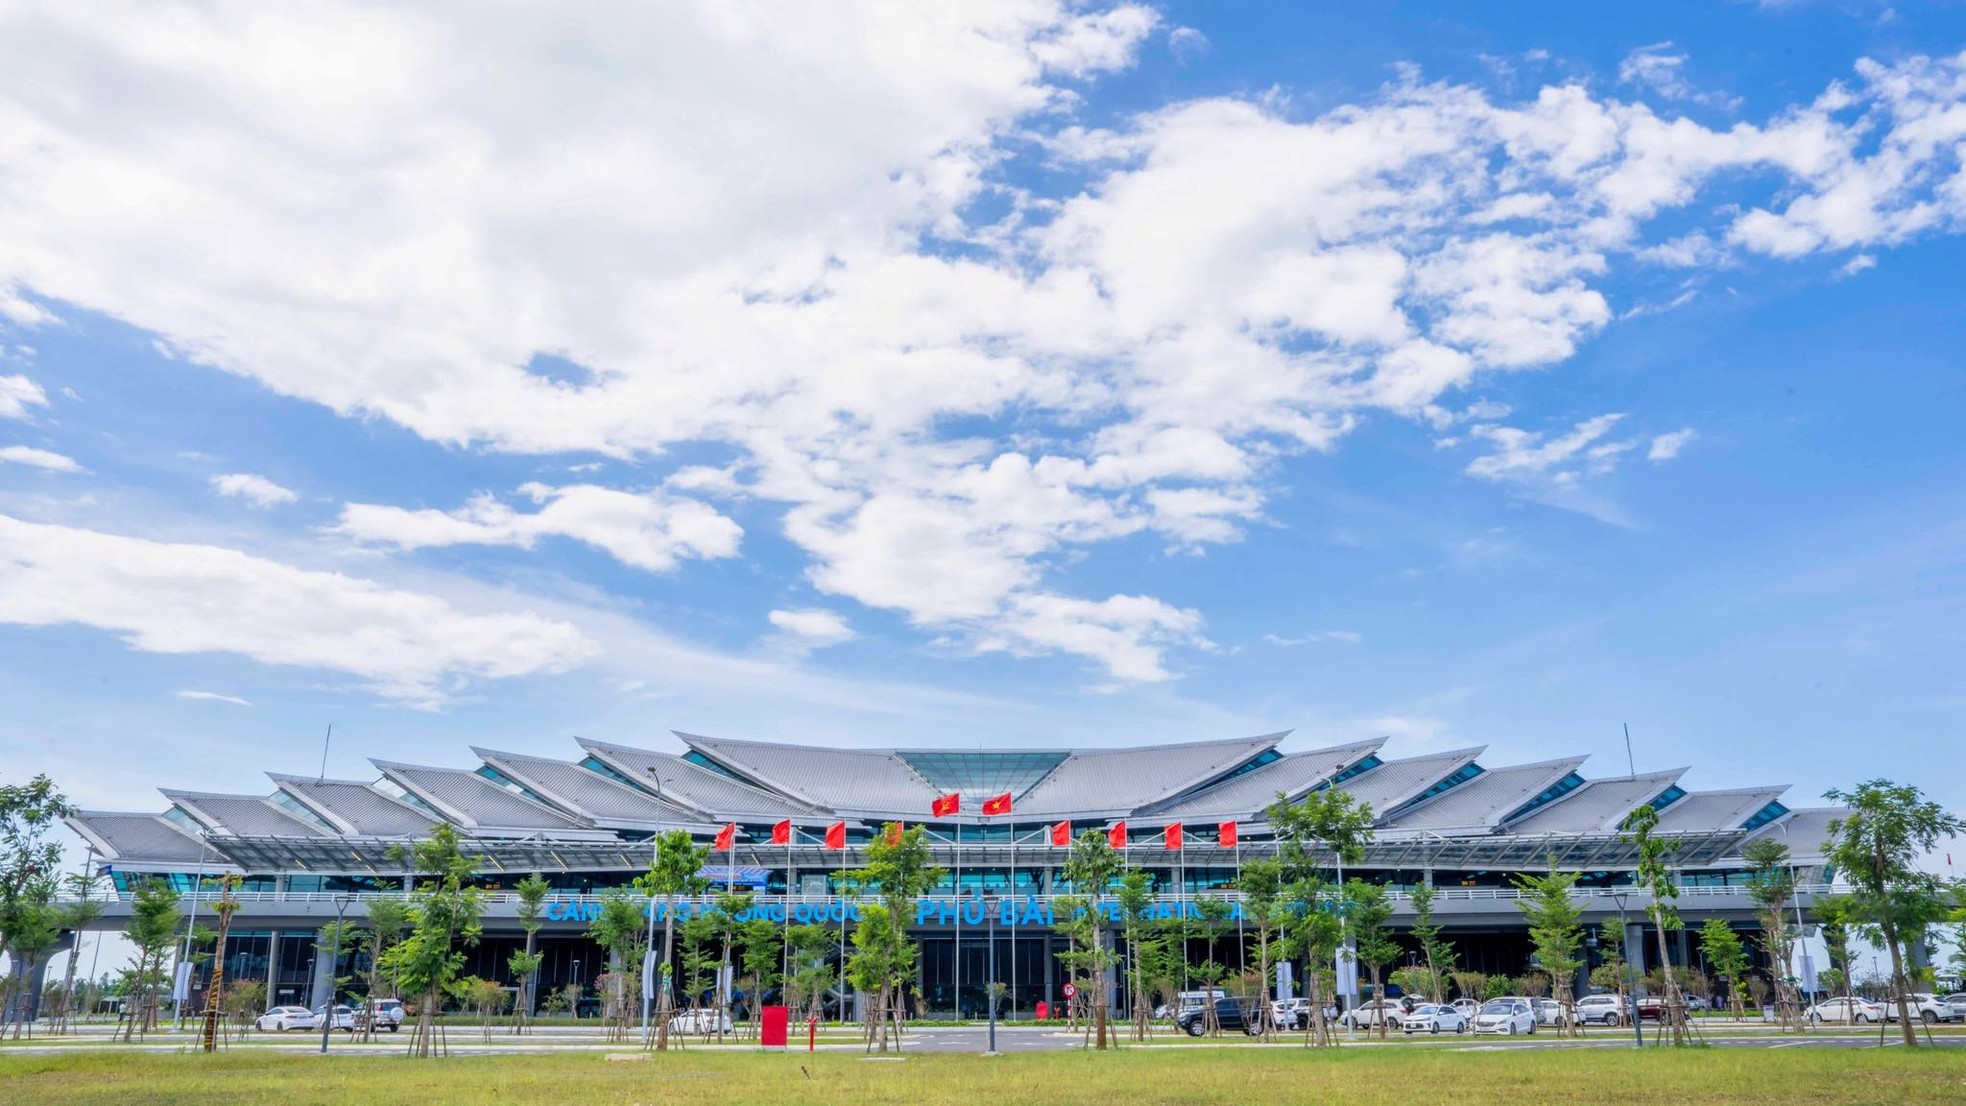 Ấn tượng hình ảnh kiến trúc sân bay 'độc nhất vô nhị' ở Việt Nam - Ảnh 1.